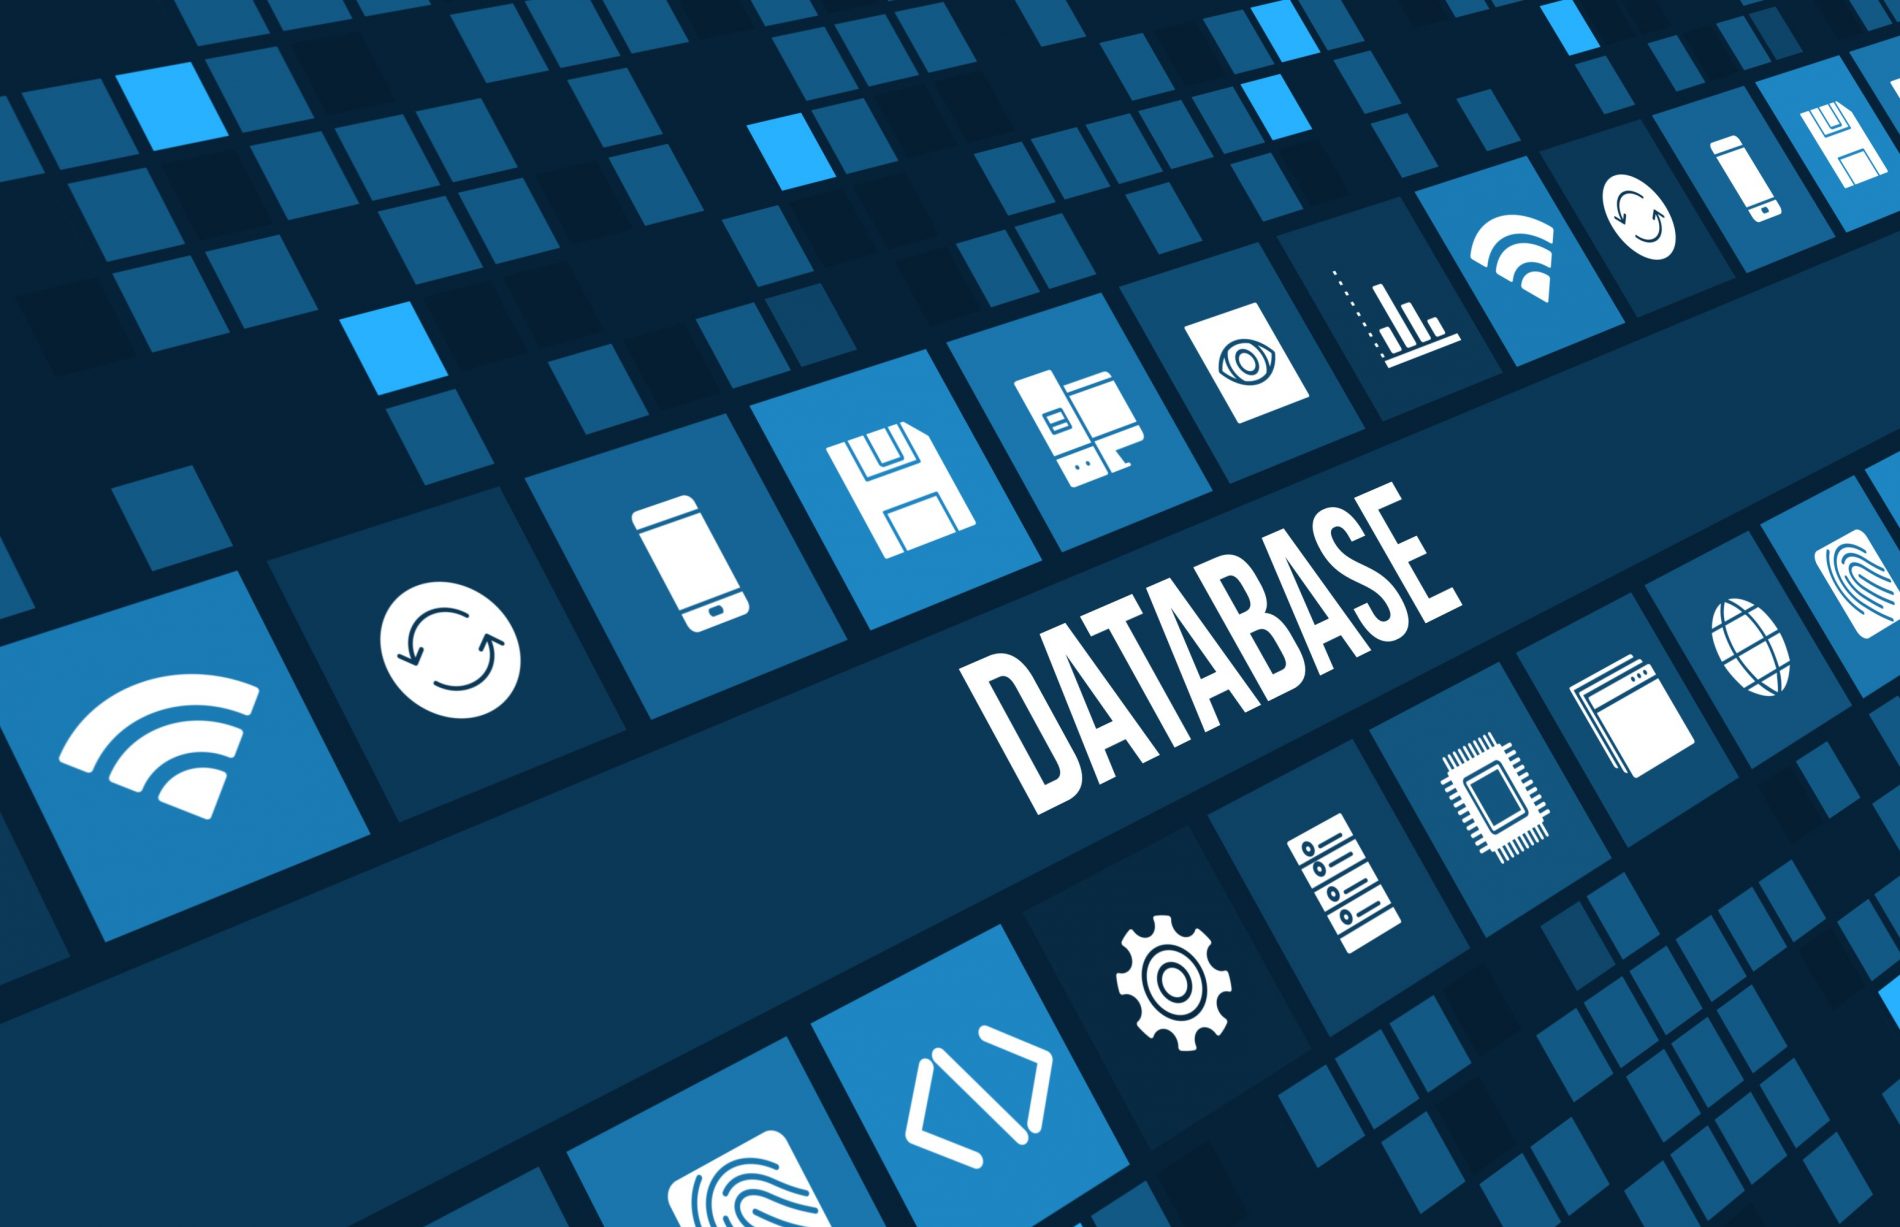 PostgreSQL e MySQL – Os bancos de dados mais utilizados no mercado